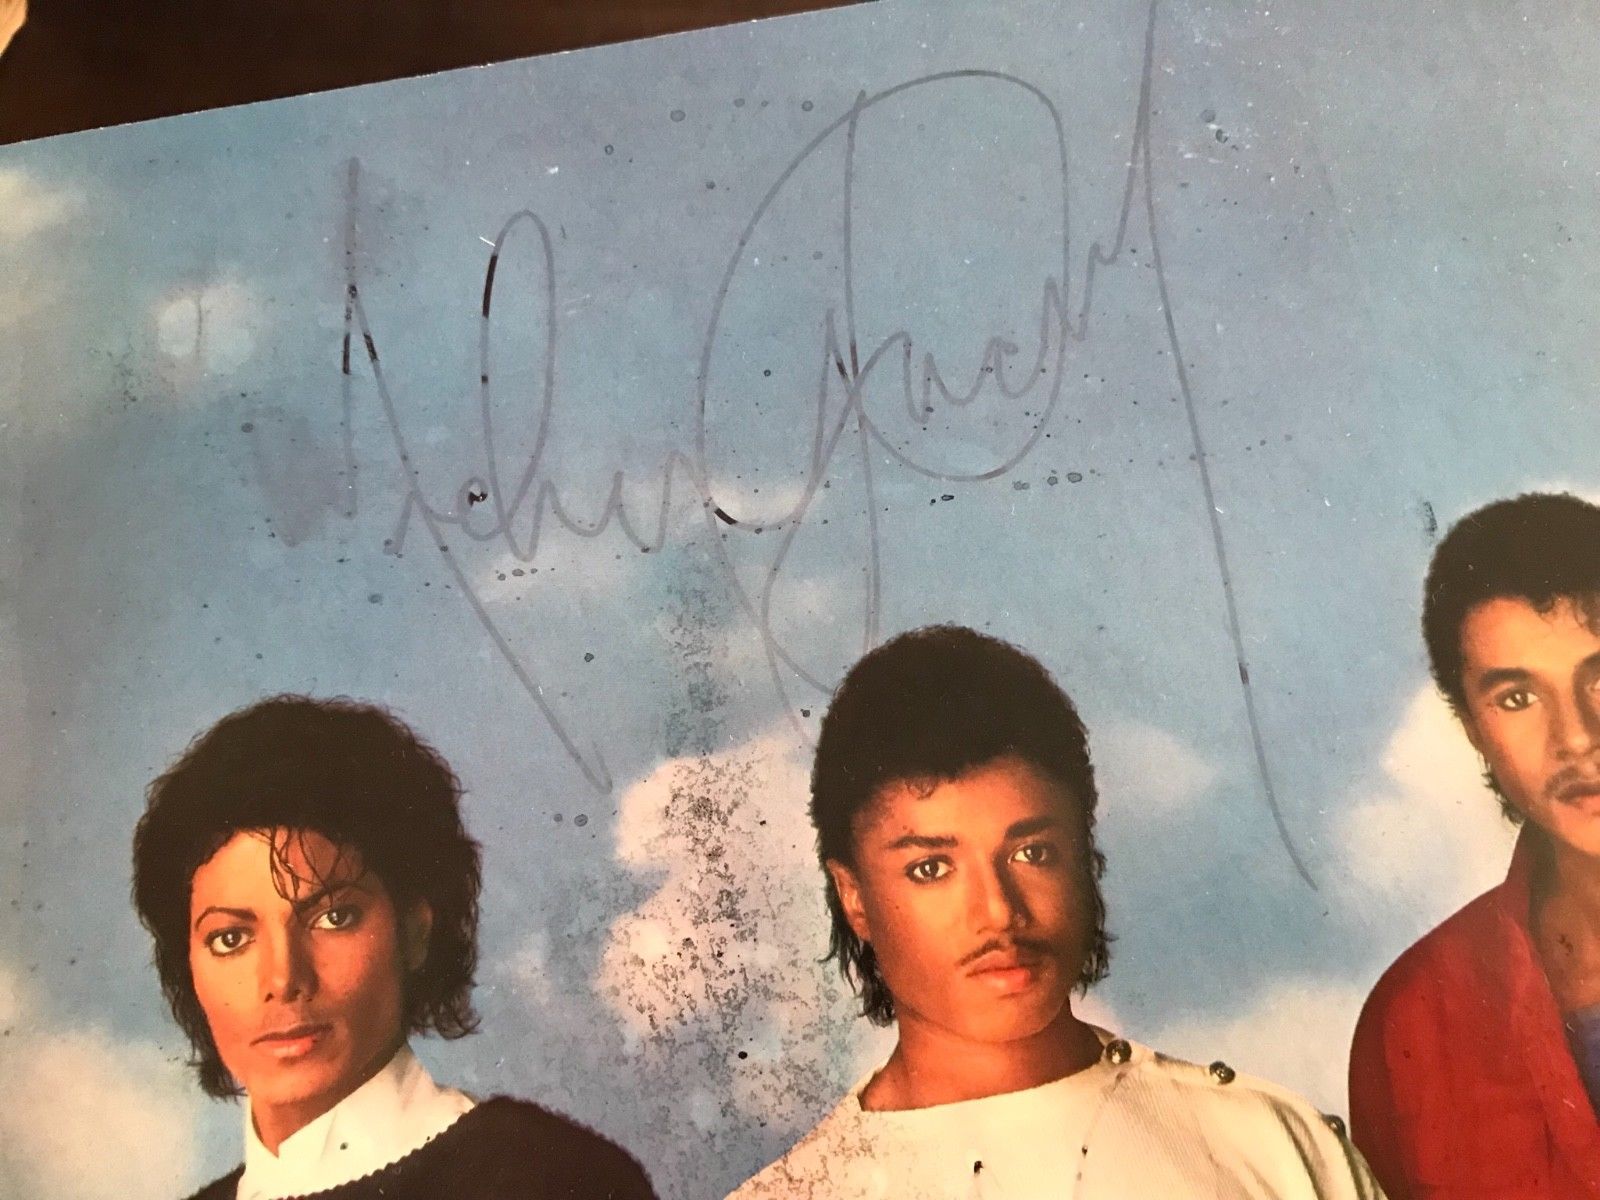 popsike.com - Michael Jackson autograph - The Jacksons Victory LP 